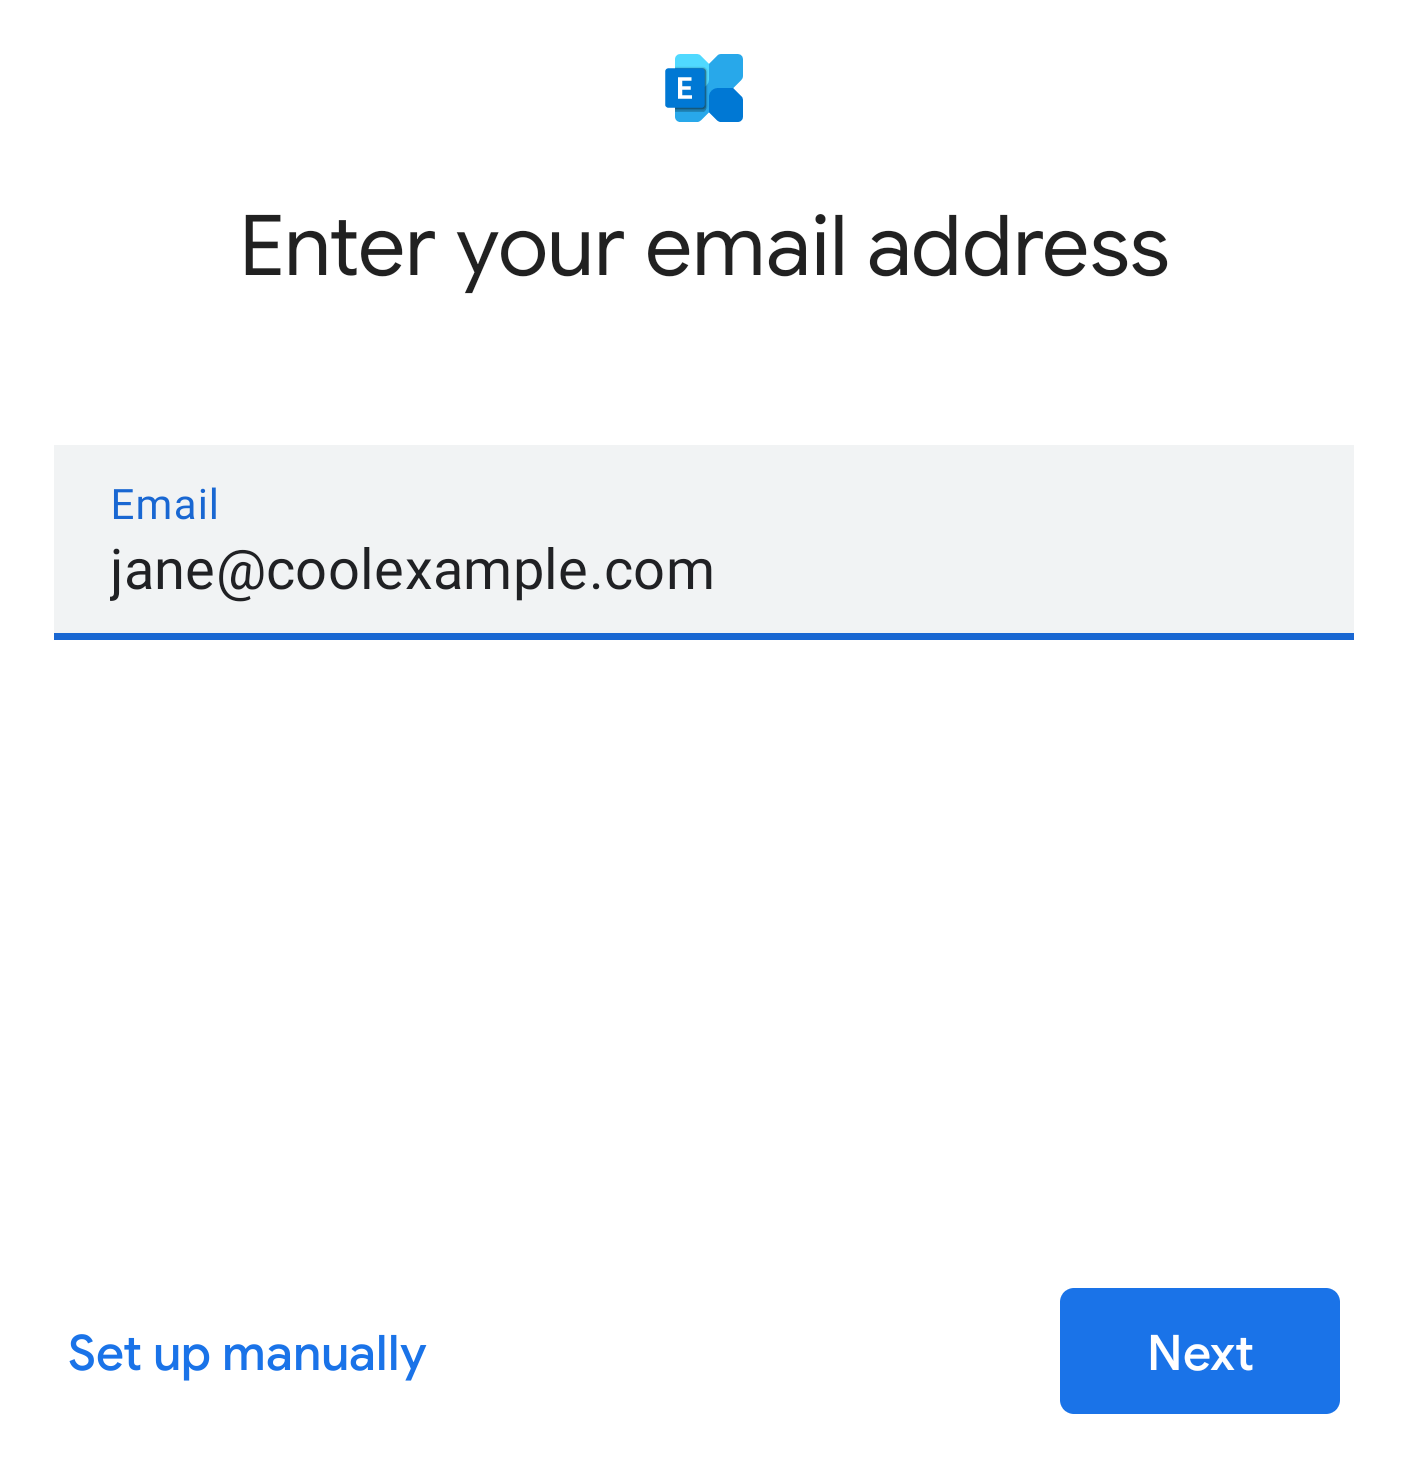 Ingresa la dirección de correo electrónico